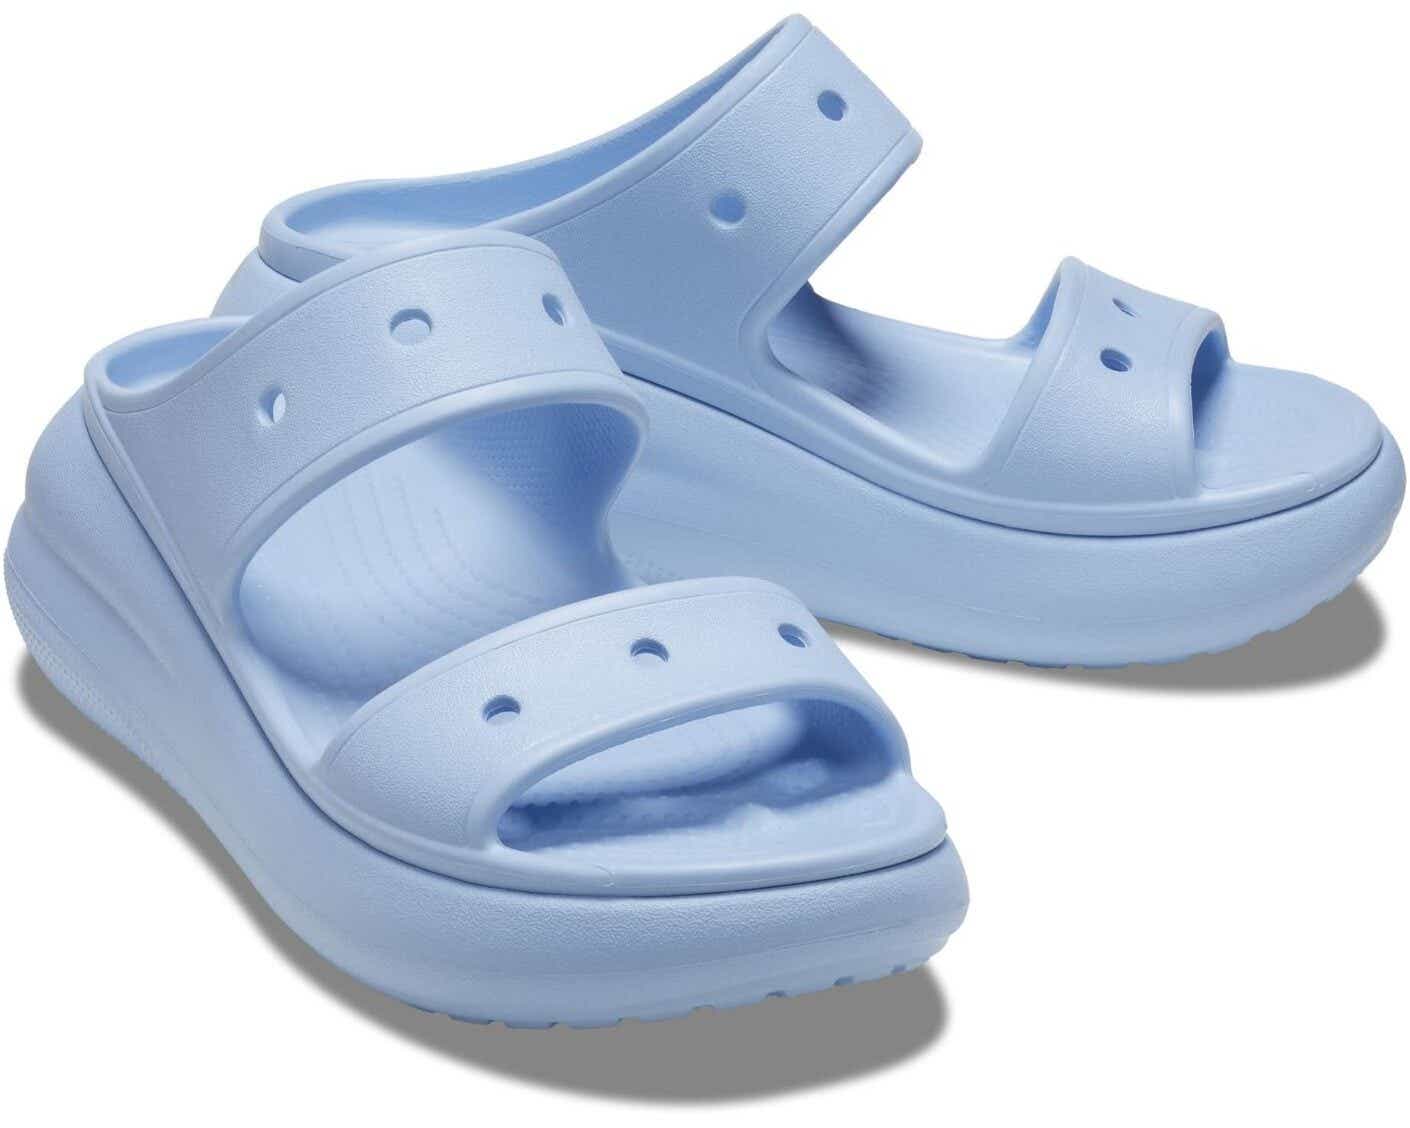 A pair of crocs sandals